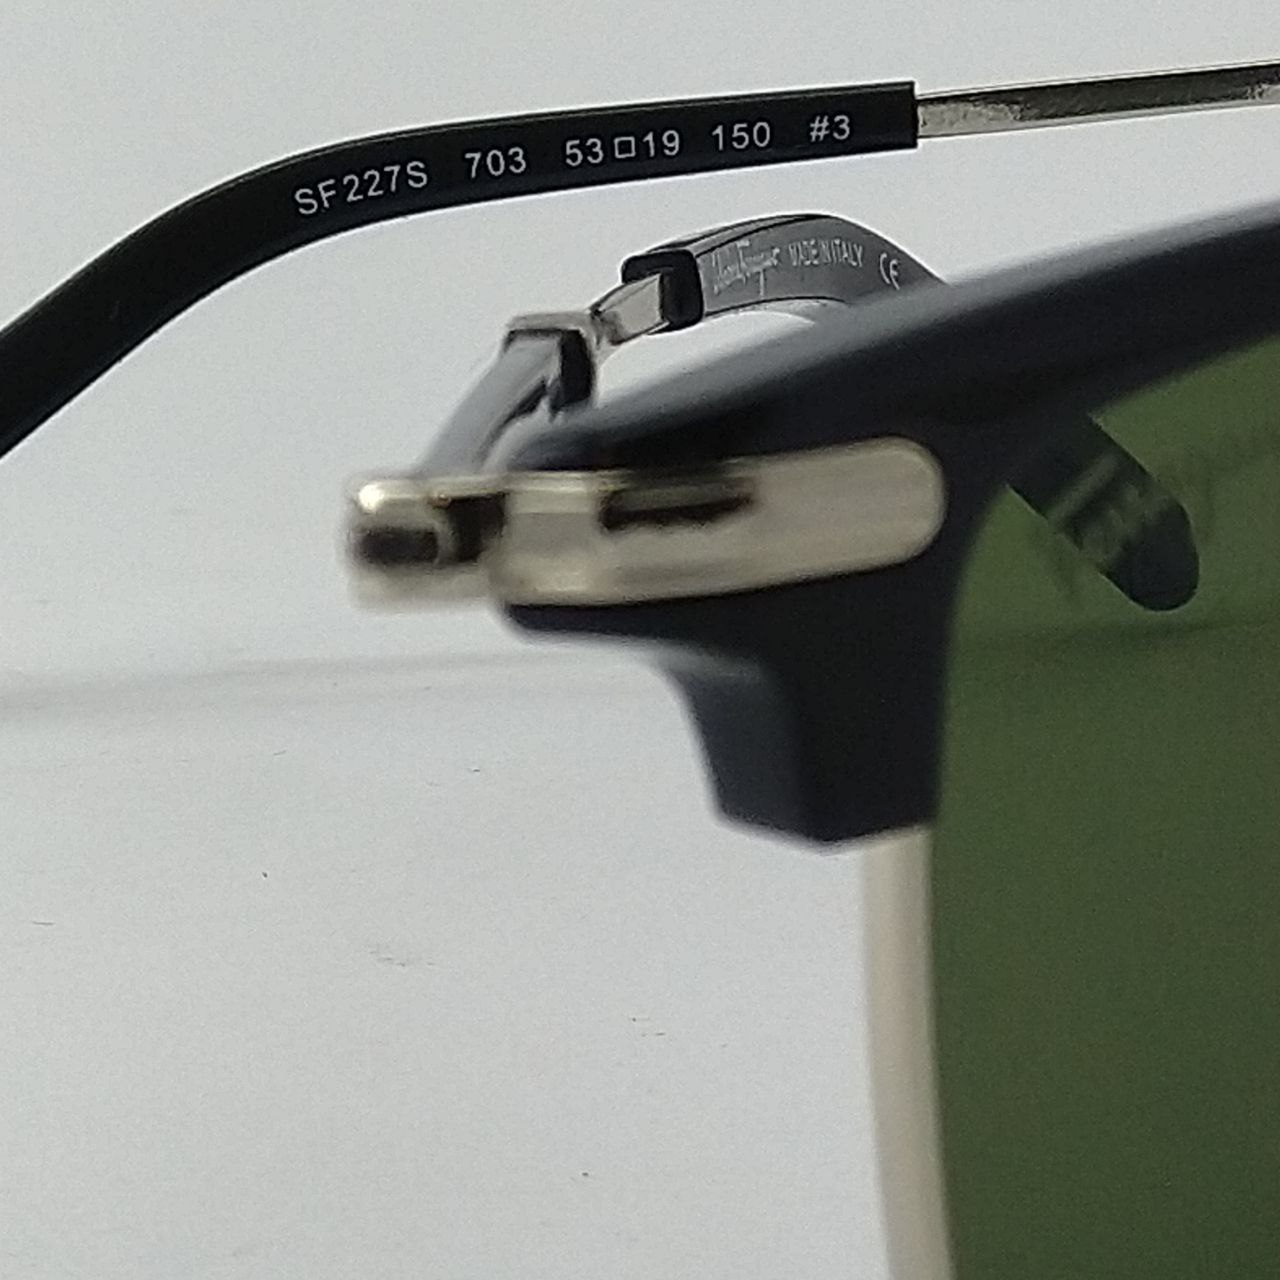 عینک آفتابی سالواتوره فراگامو مدل SF227S 703 -  - 5